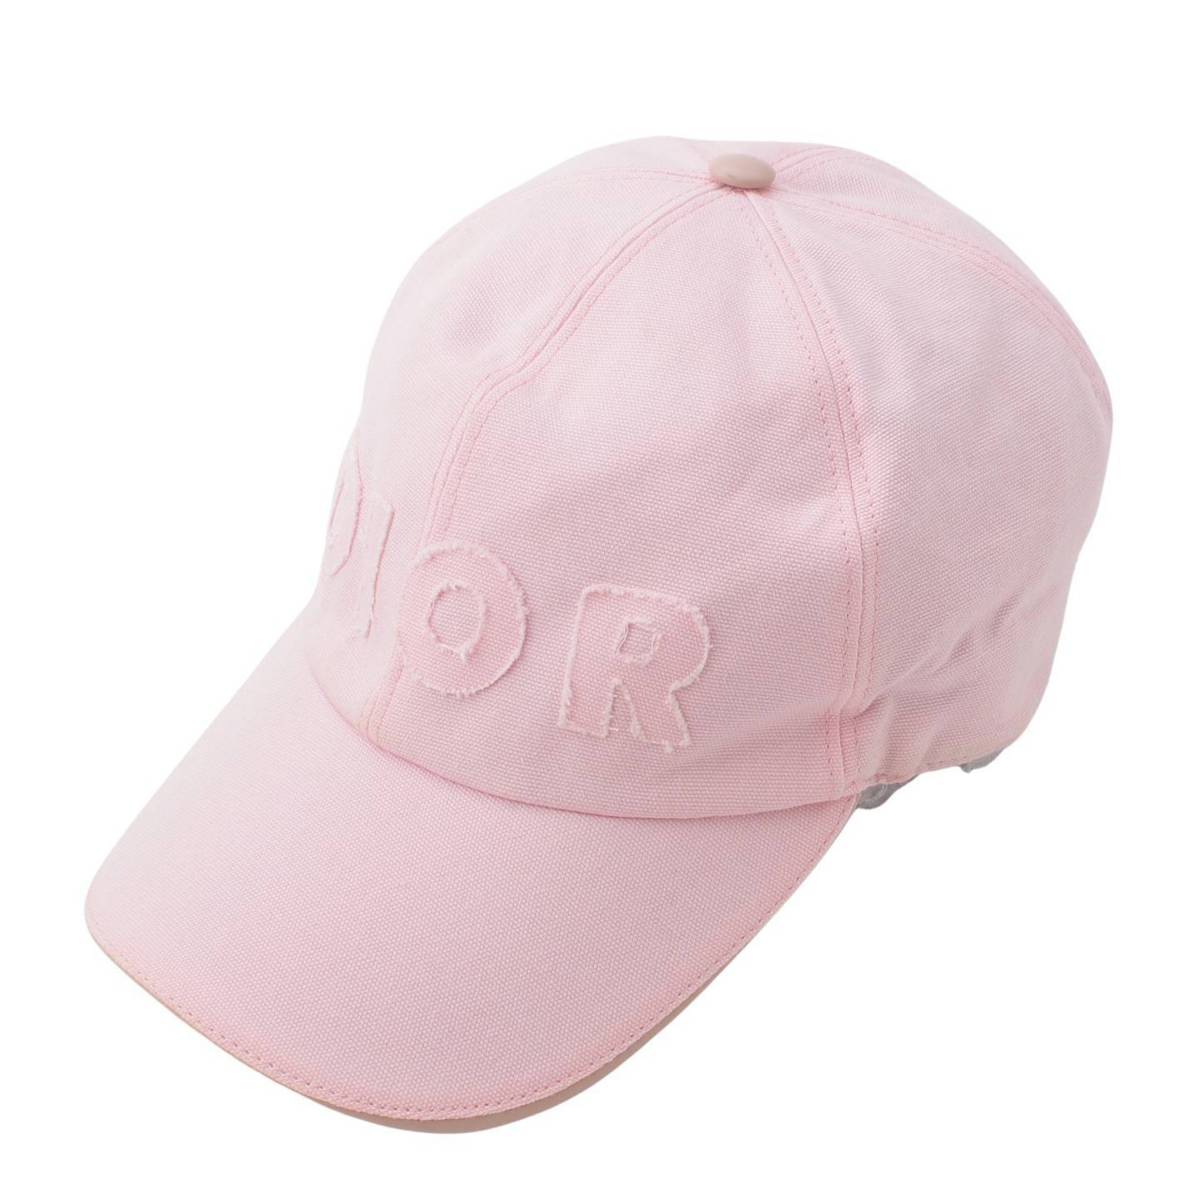 ディオール Dior ロゴ 023C909A4511 ダニエルアーシャム コラボ DANIEL ARSHAM 帽子 キャップ帽 ベースボール キャップ コットン ピンク 美品